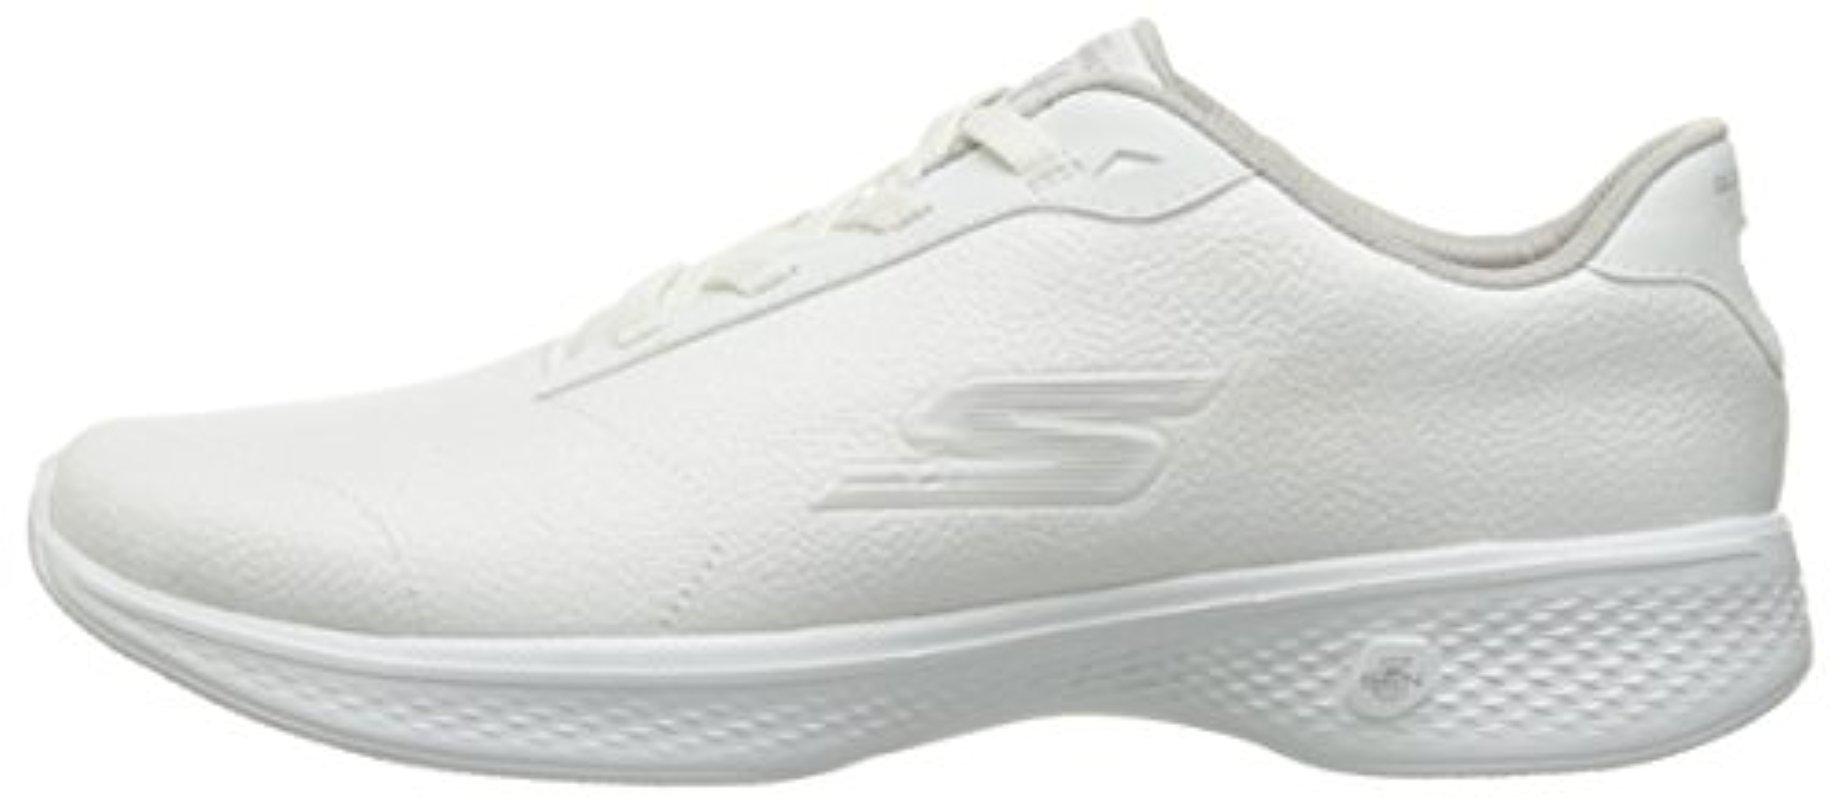 Skechers Performance Go Walk 4 Premier Walking Shoe in White | Lyst